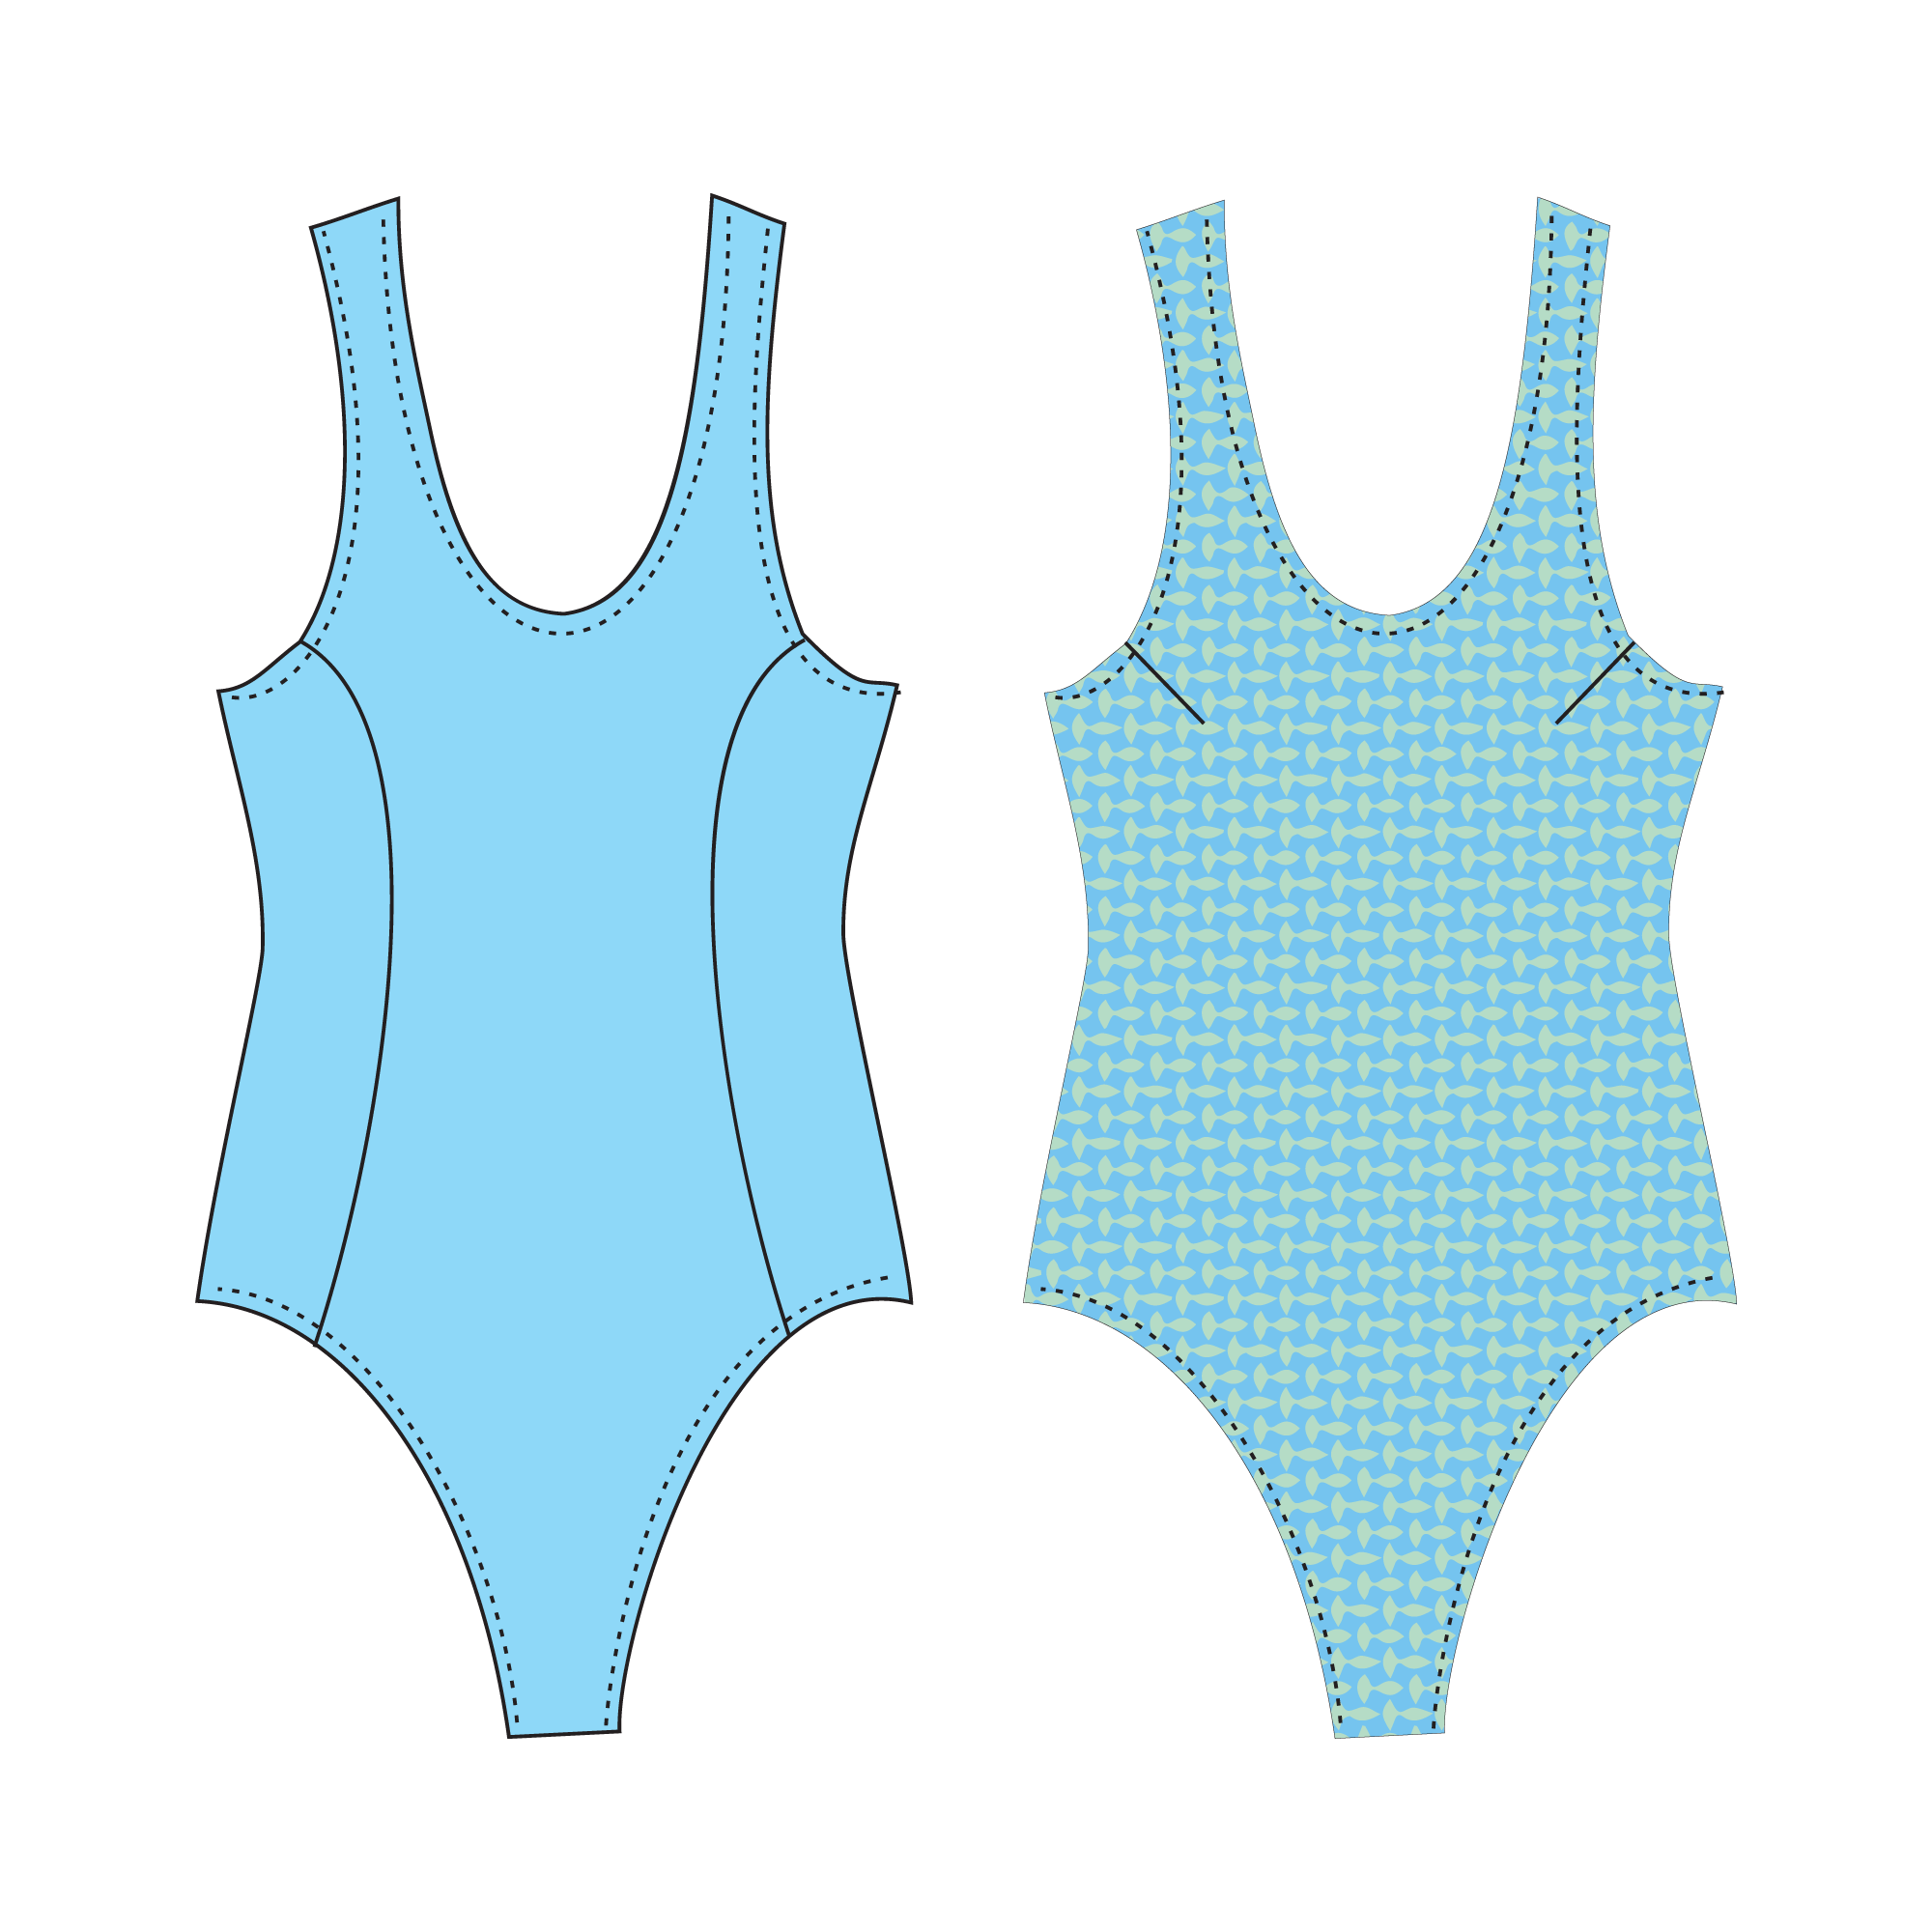 Swimwear drawing templates myweblasopa